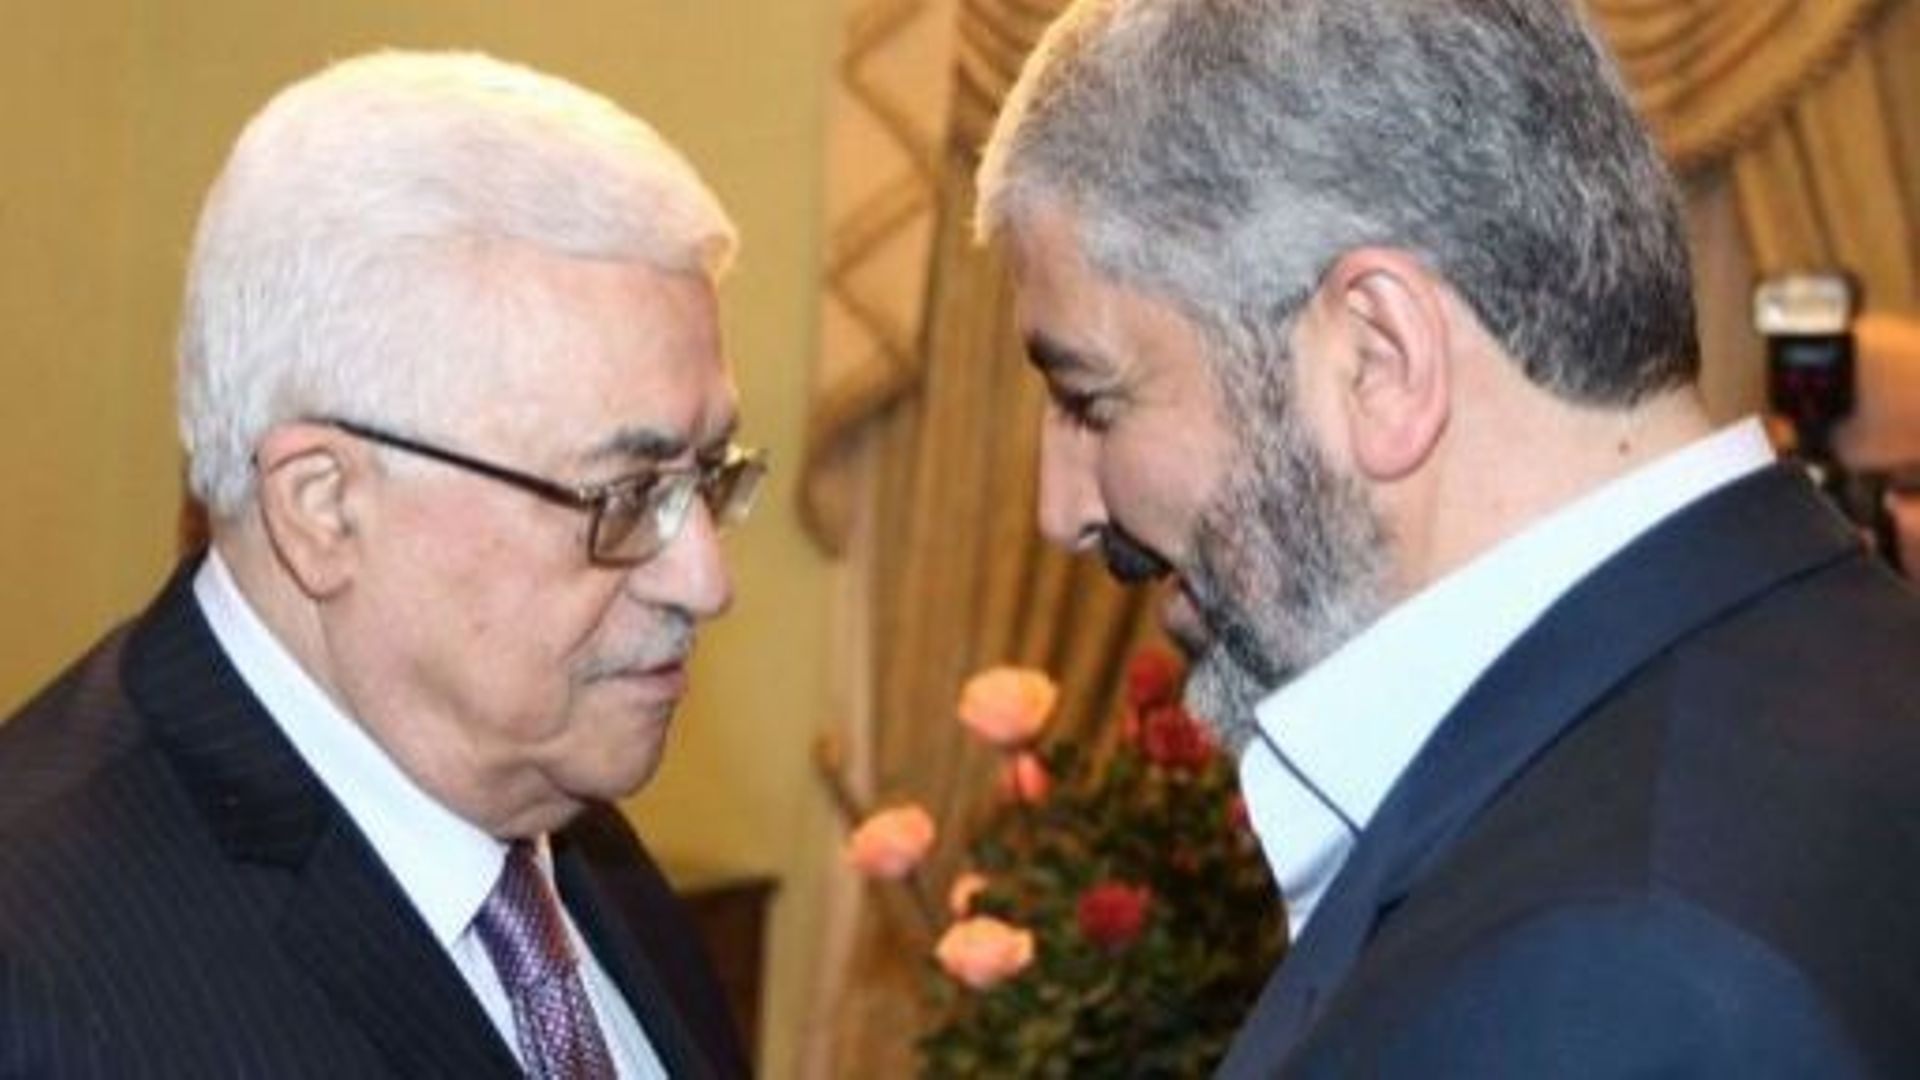 Le président palestinien Mahmoud Abbas et le chef du Hamas, Khaled Mechaal, le 21 décembre 2011 au Caire. Image transmise par le service presse du Hamas.